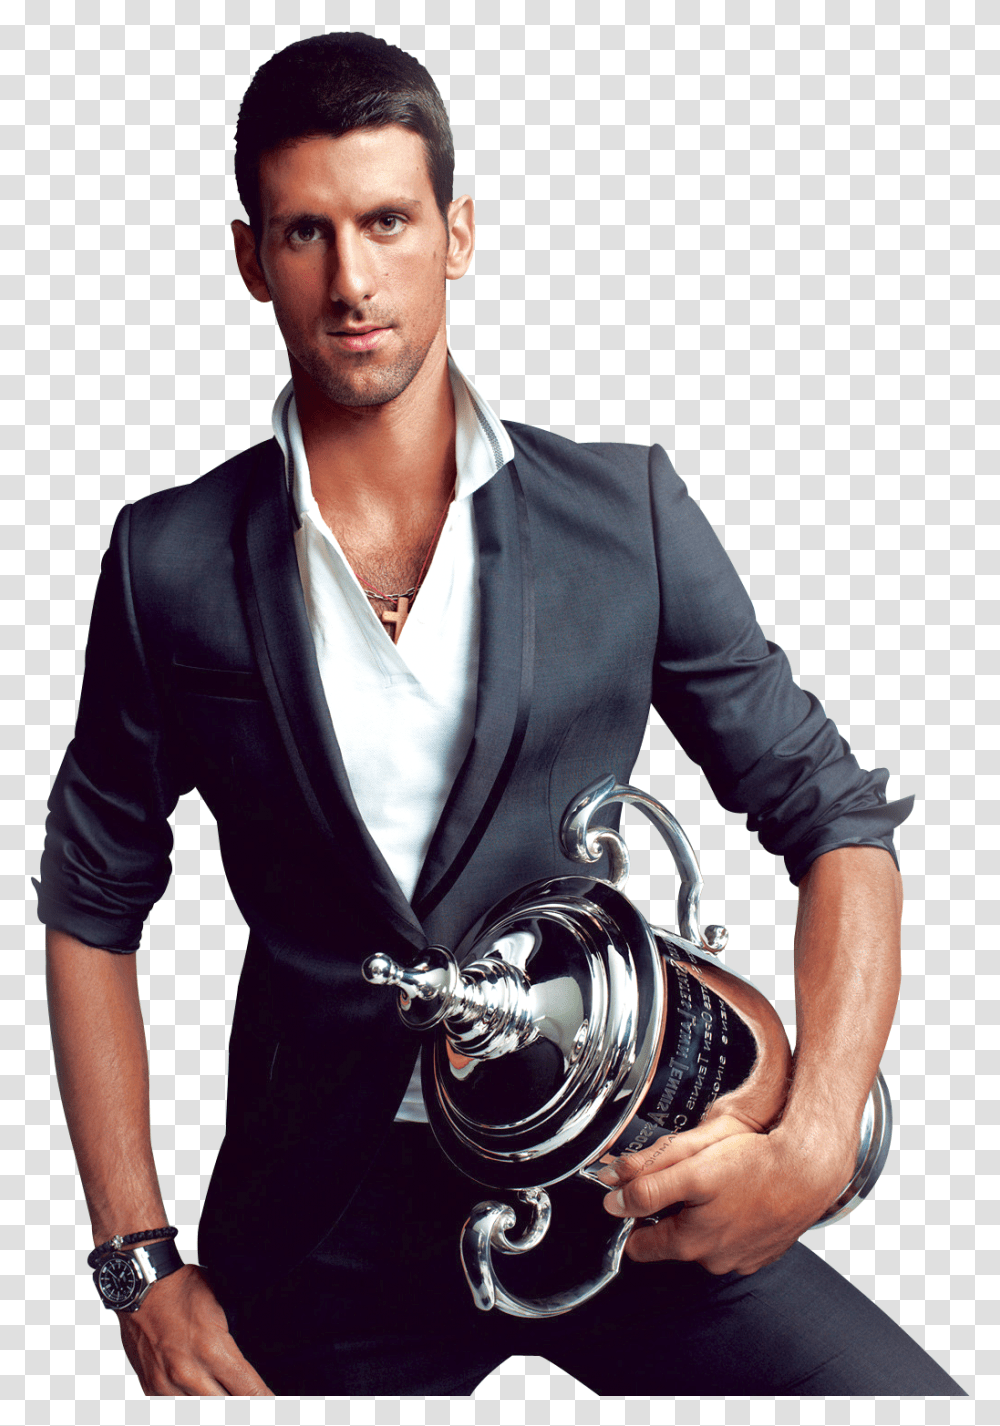 Novak Djokovic Image Photo Shoot, Person, Human, Apparel Transparent Png